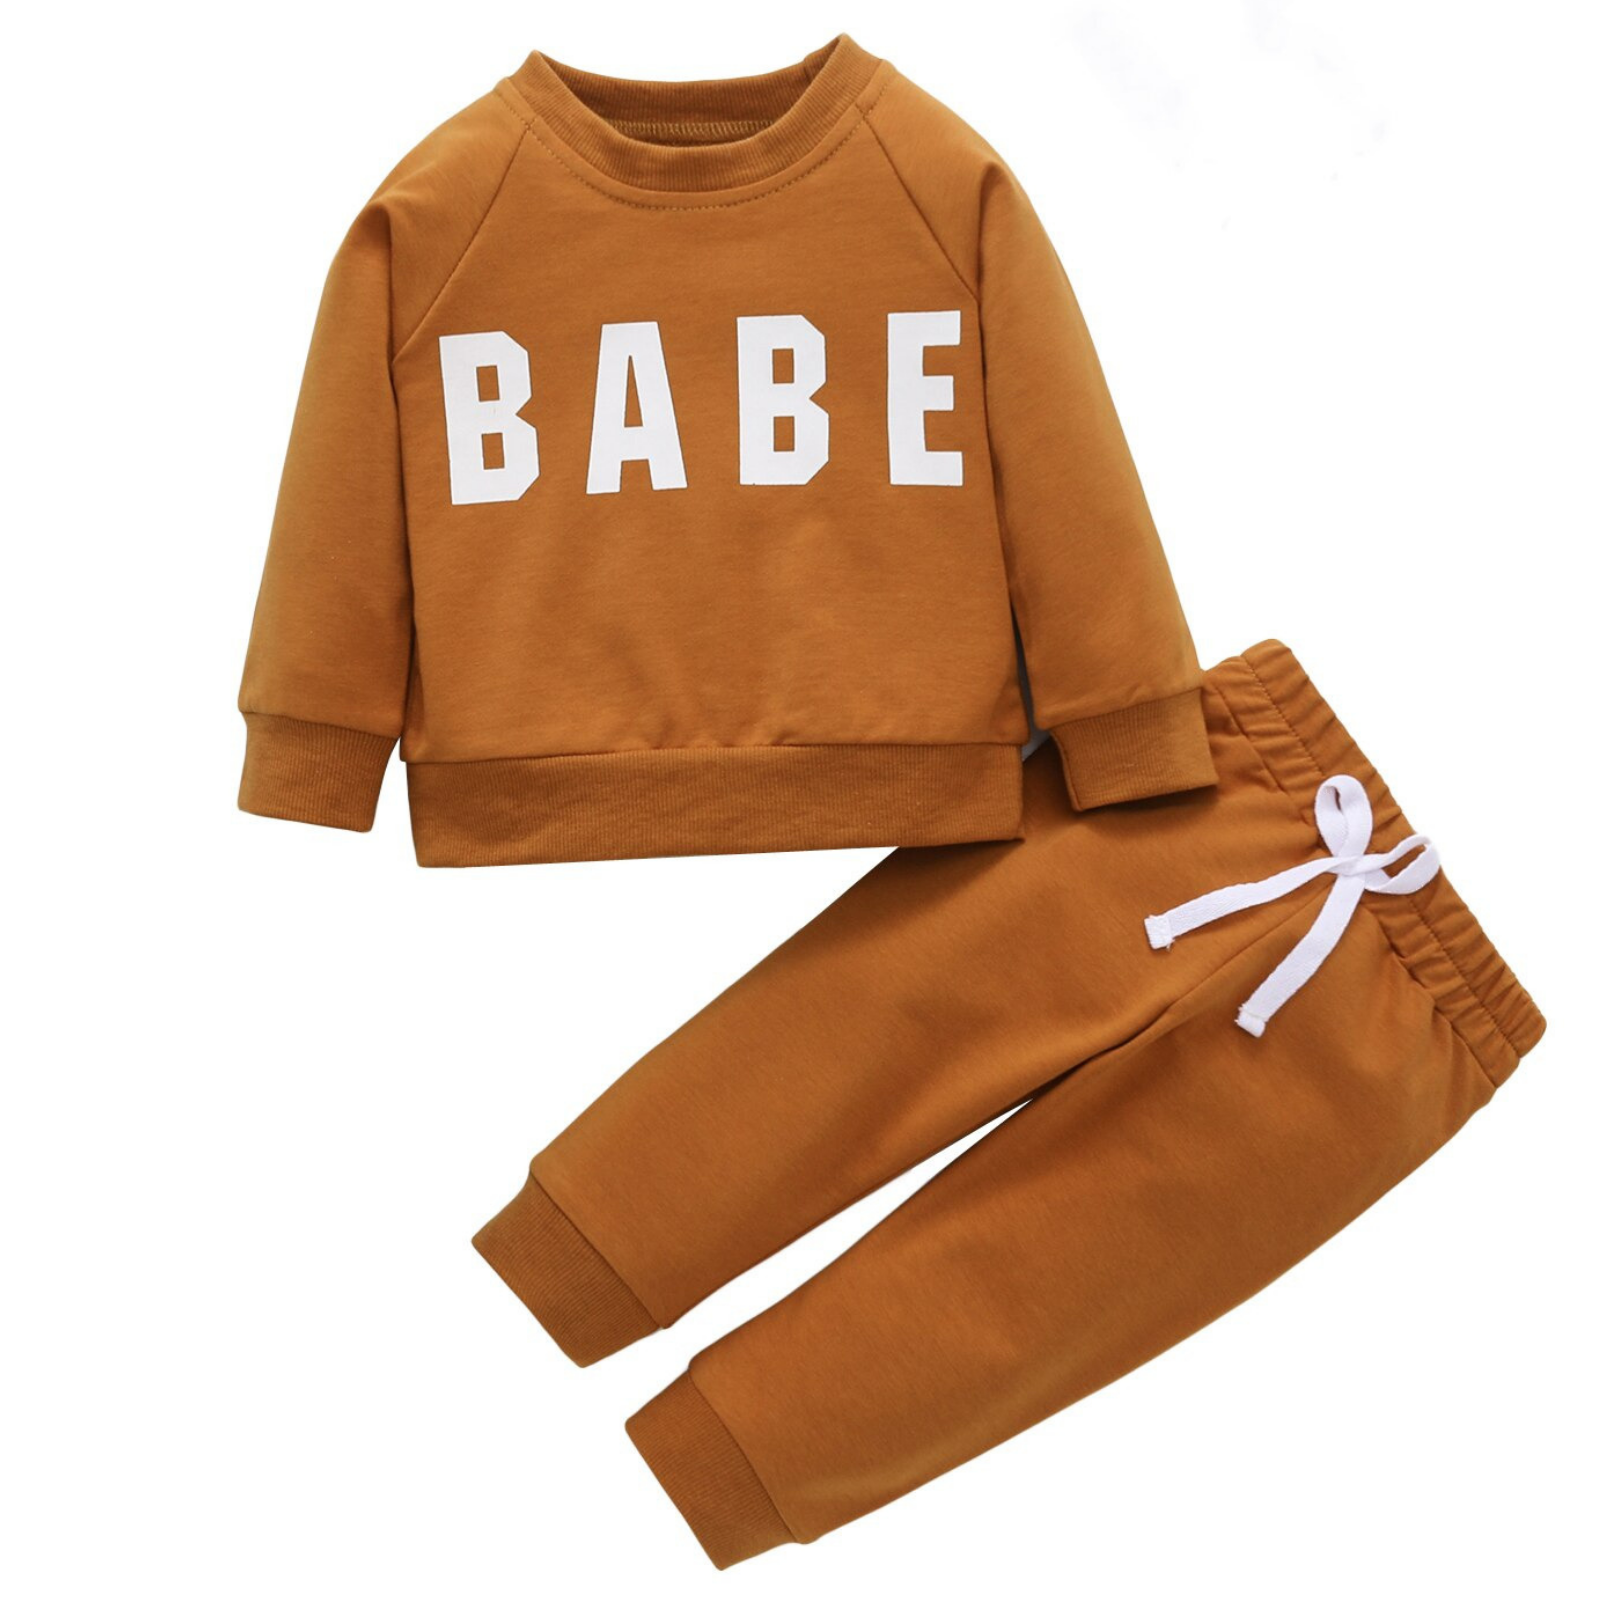 Babe Tracksuit Toddler Clothing Set